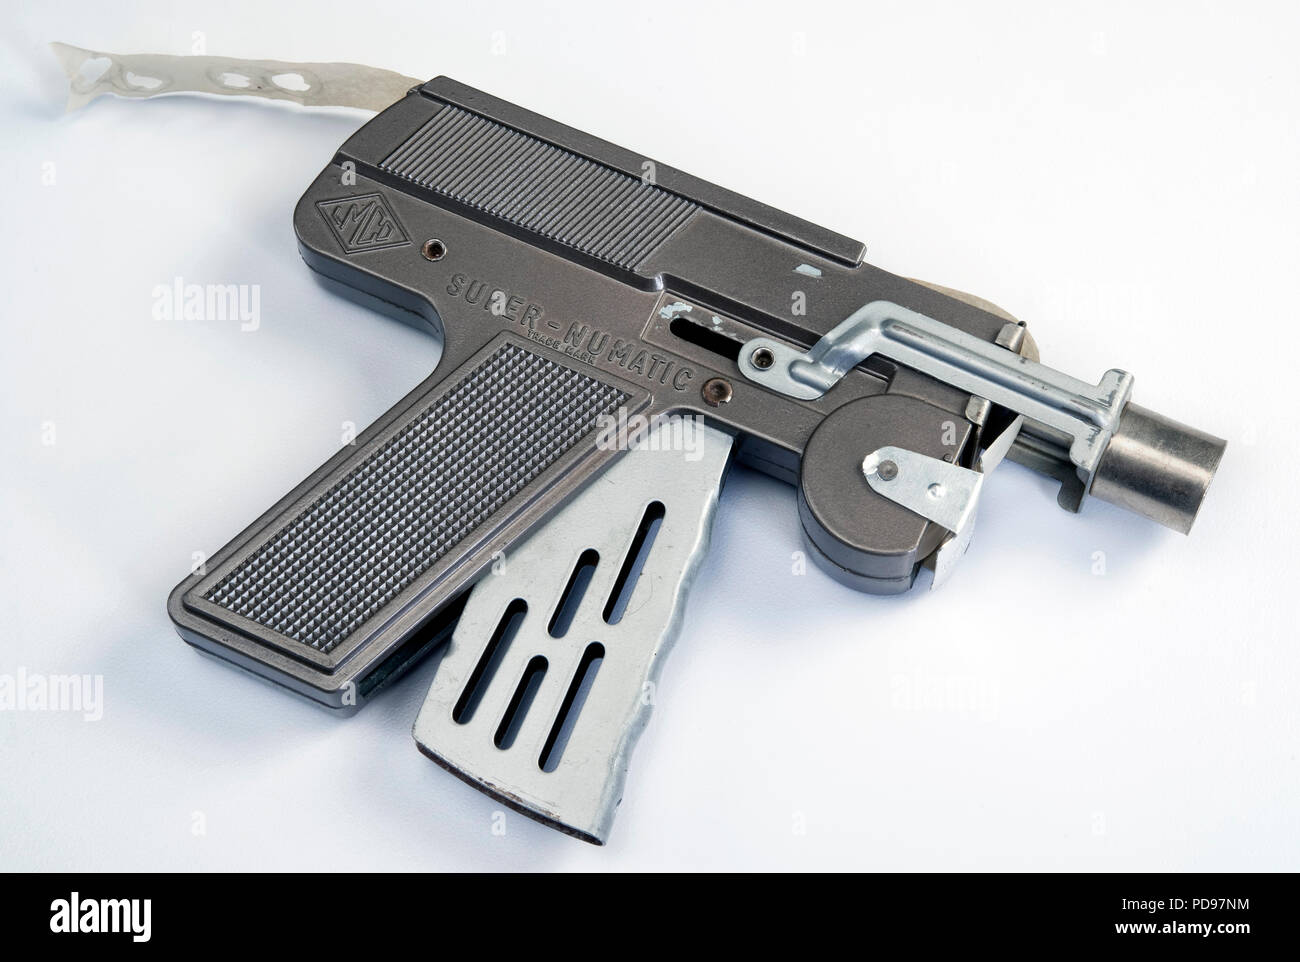 Dallas,Texas Agosto 5-2018 Super Nu Matic pistola de juguete cap realizados en la década de 1950. Parece una pistola de rayos lazer para la carrera espacial. Foto de stock